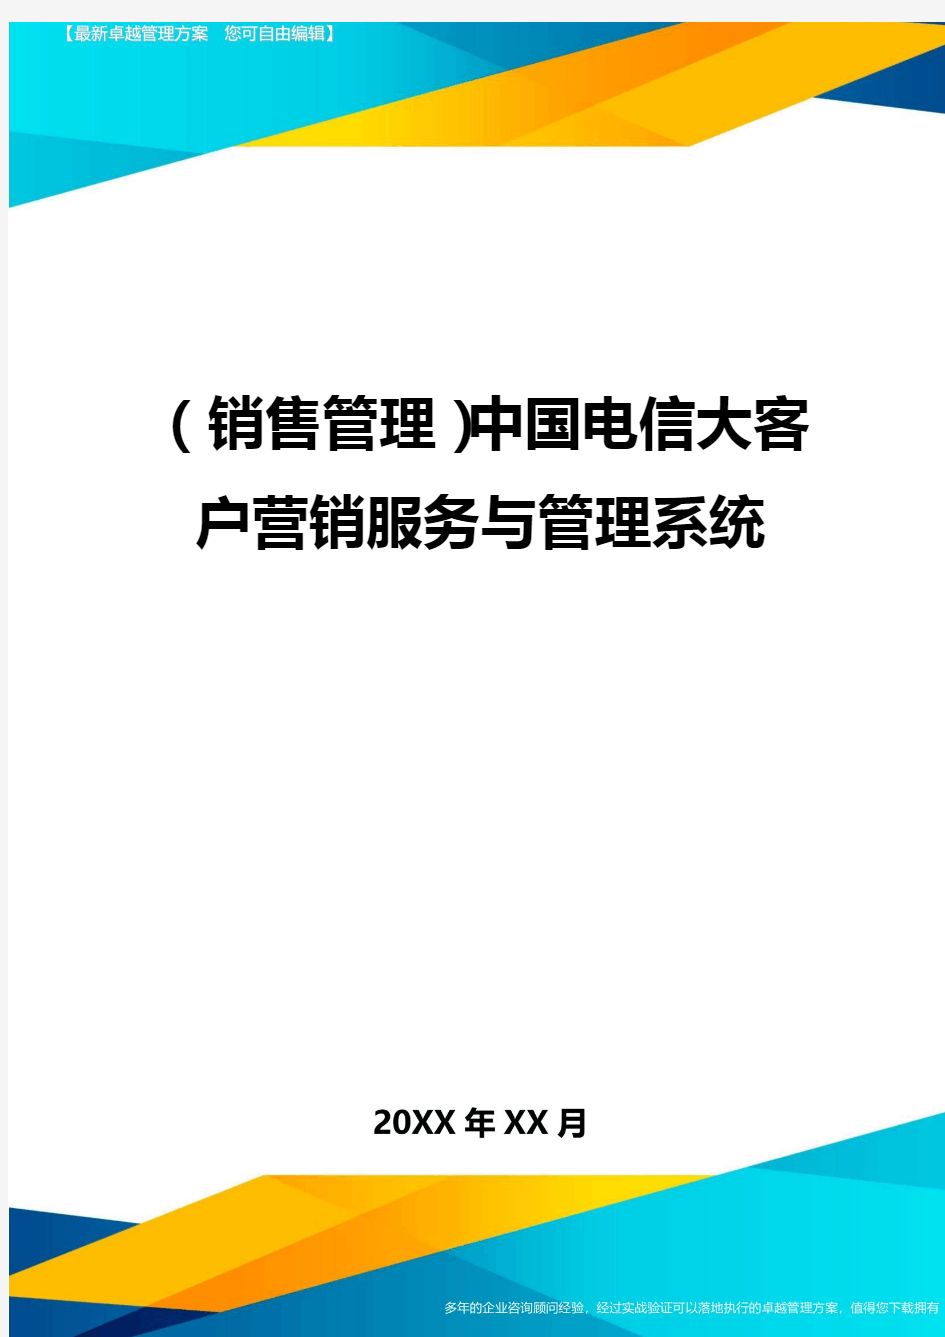 (销售管理)中国电信大客户营销服务与管理系统